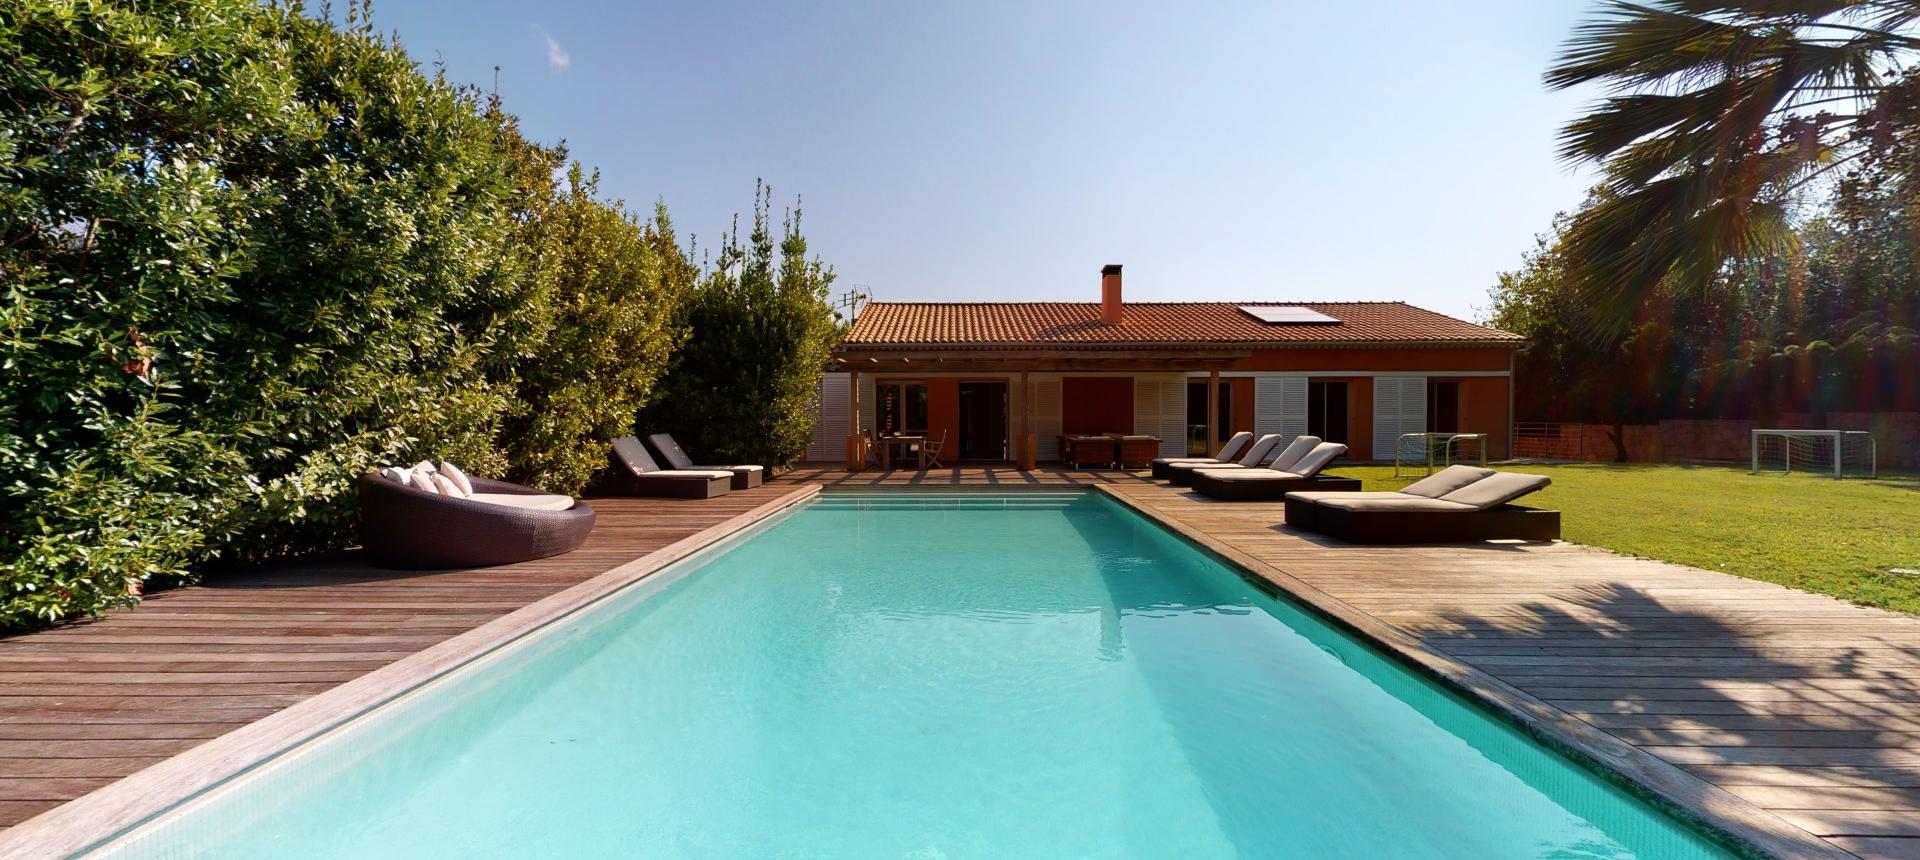 Vente villa avec piscine à AFA près d'Ajaccio